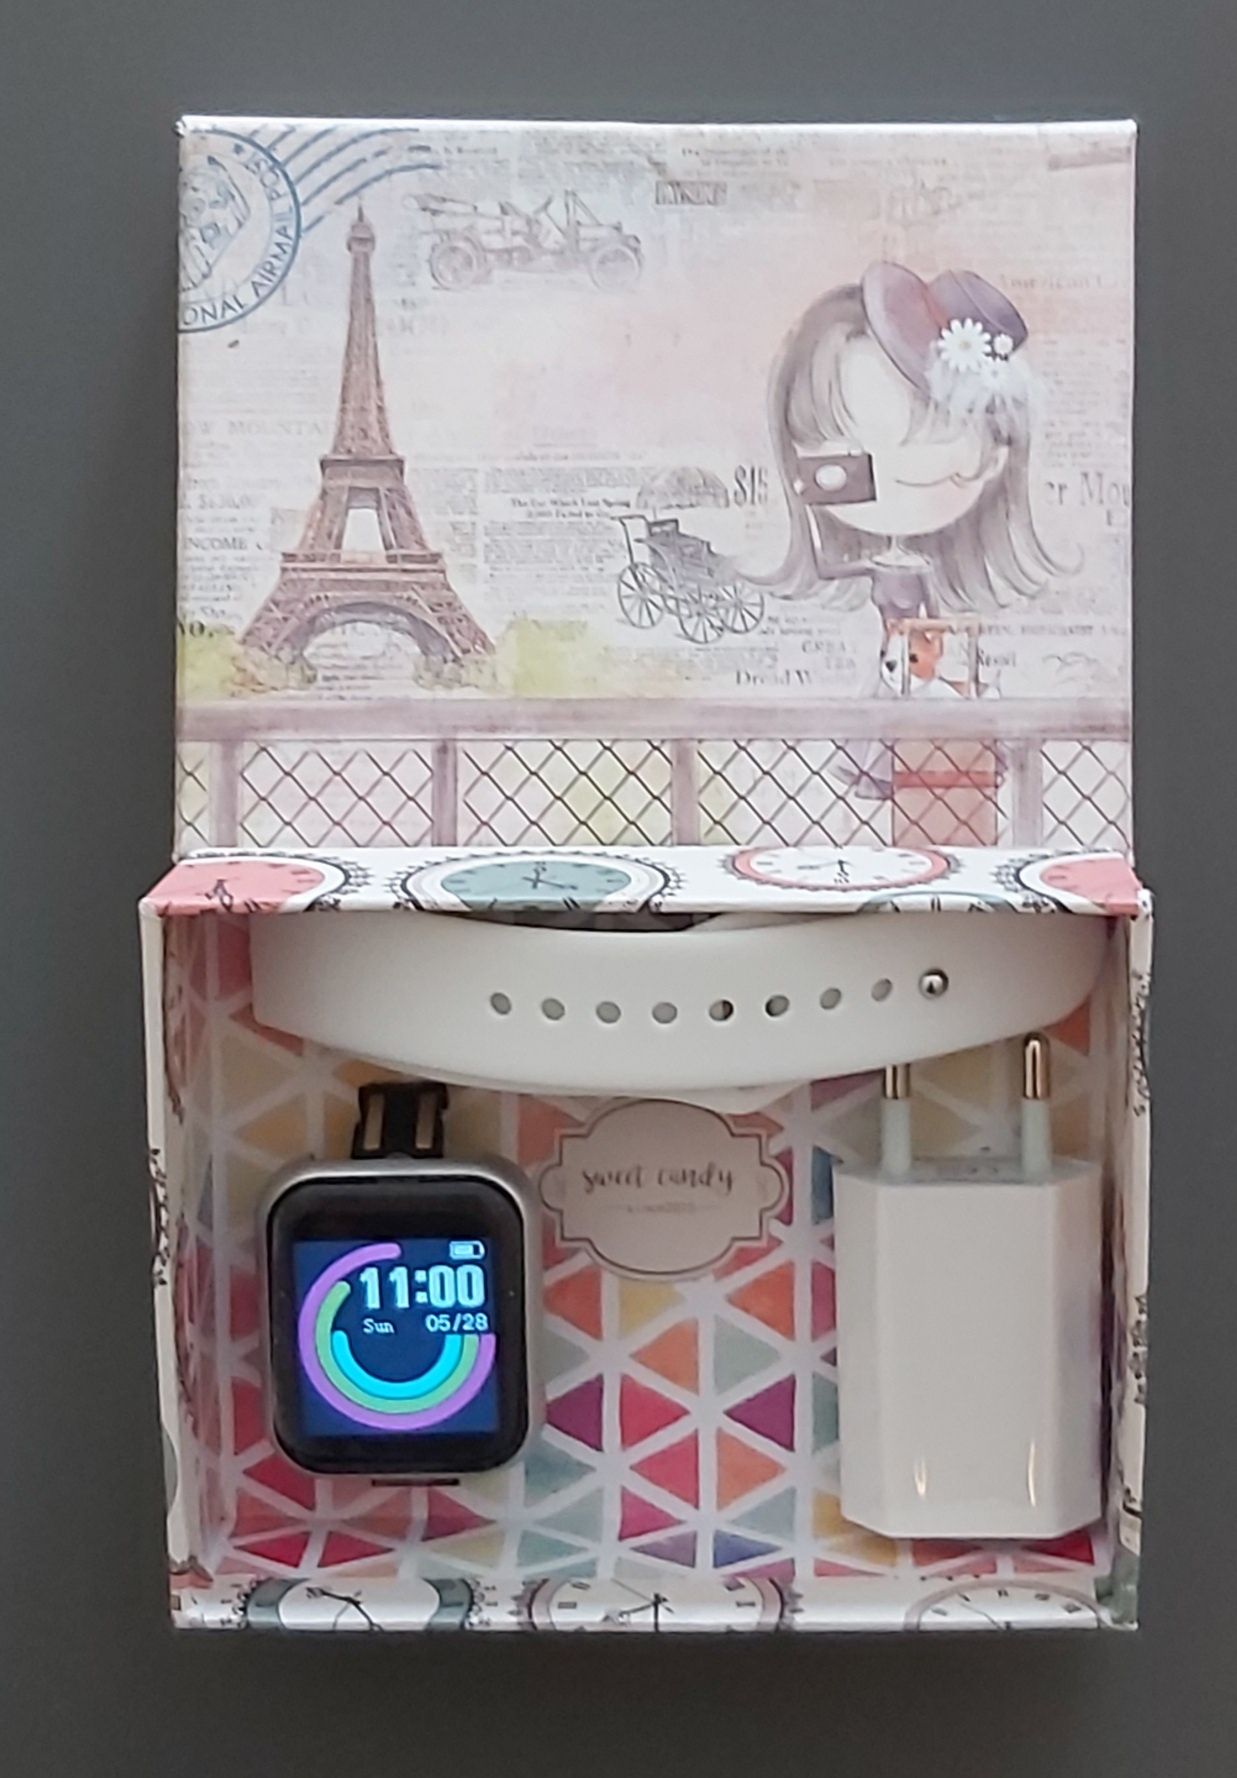 Relógio desportivo smartwatch branco com caixa e carregador